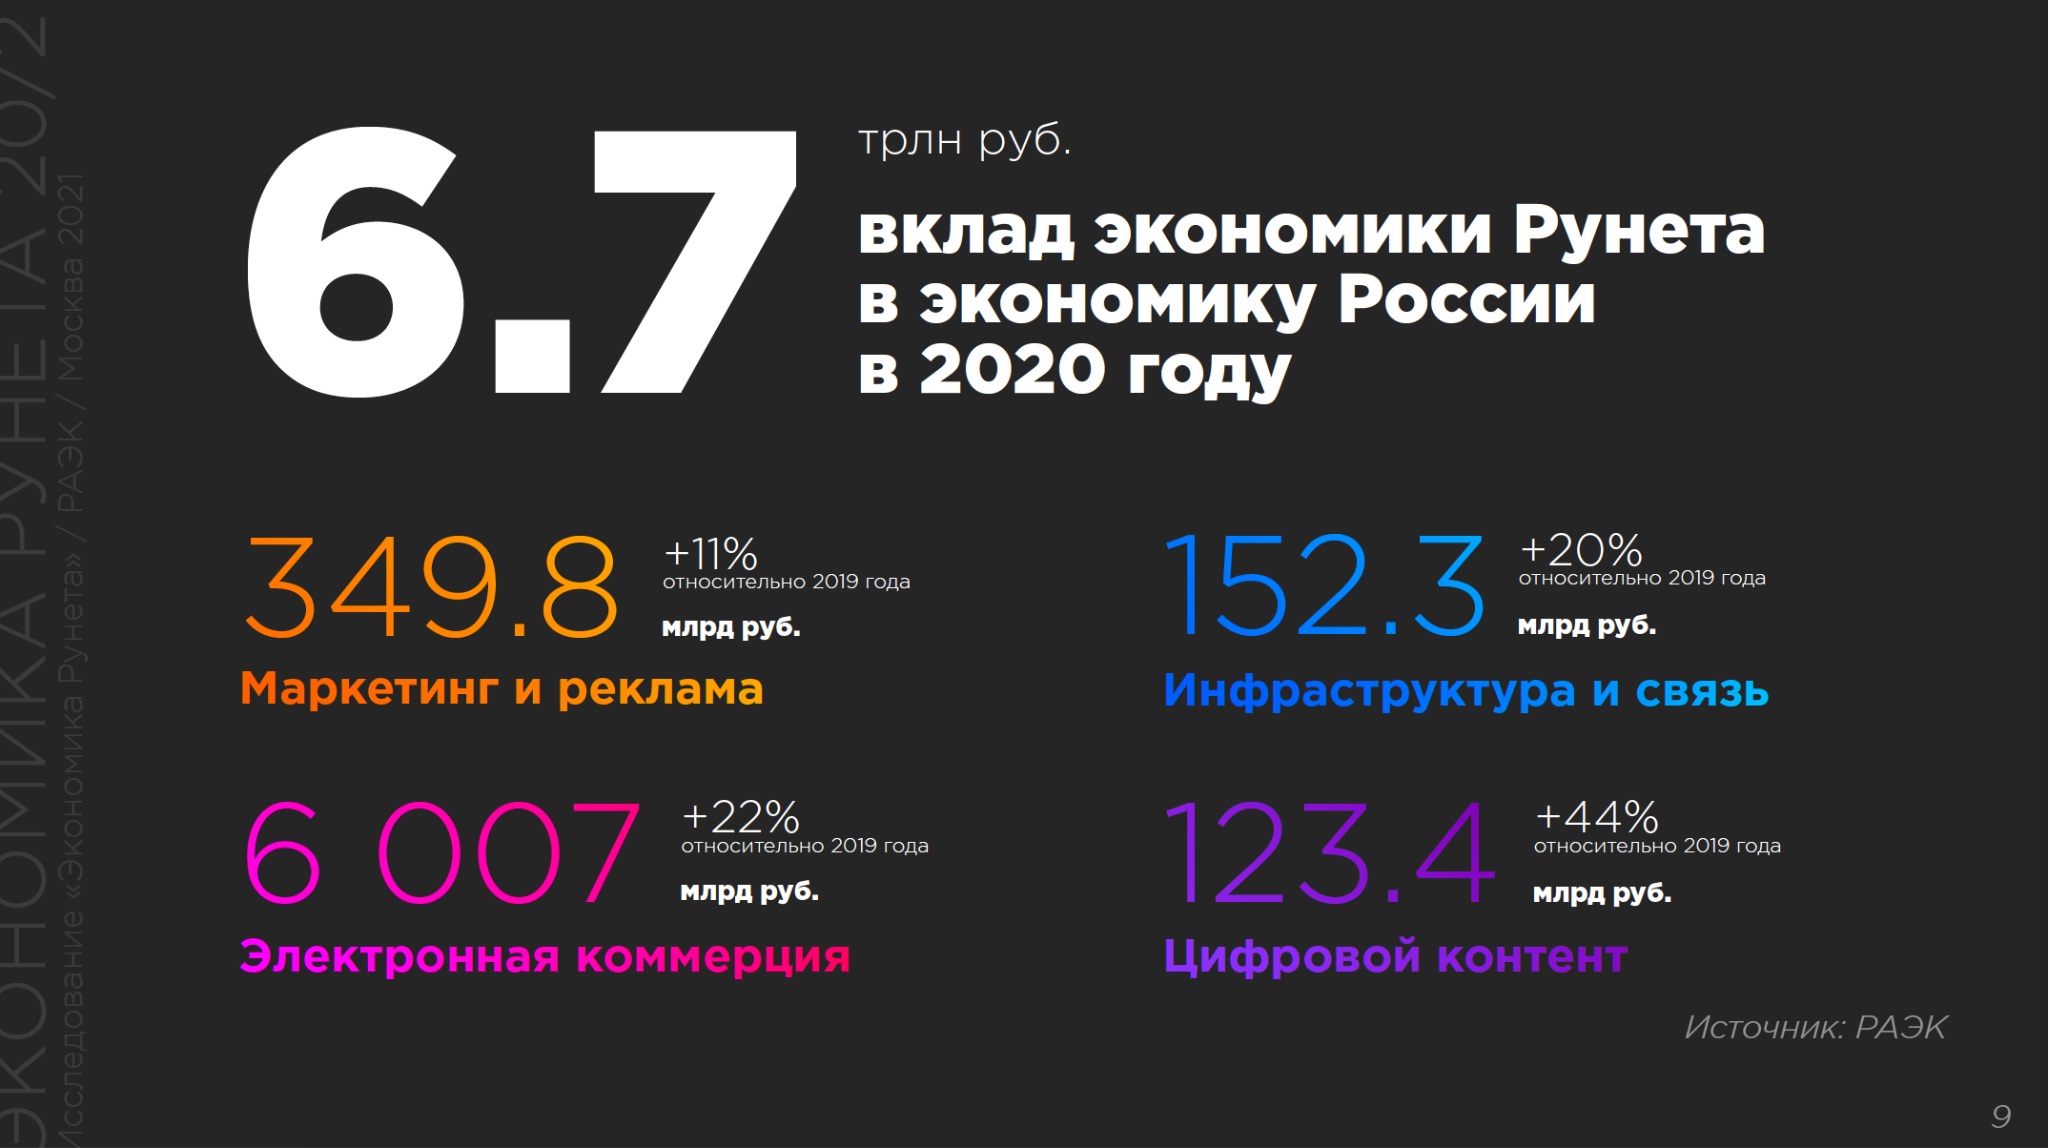 Сайт 2019 г. Экономика рунета 2020. Вклад в экономику России. Вклад рунета в экономику России по годам. Ассоциация электронных коммуникаций (РАЭК).